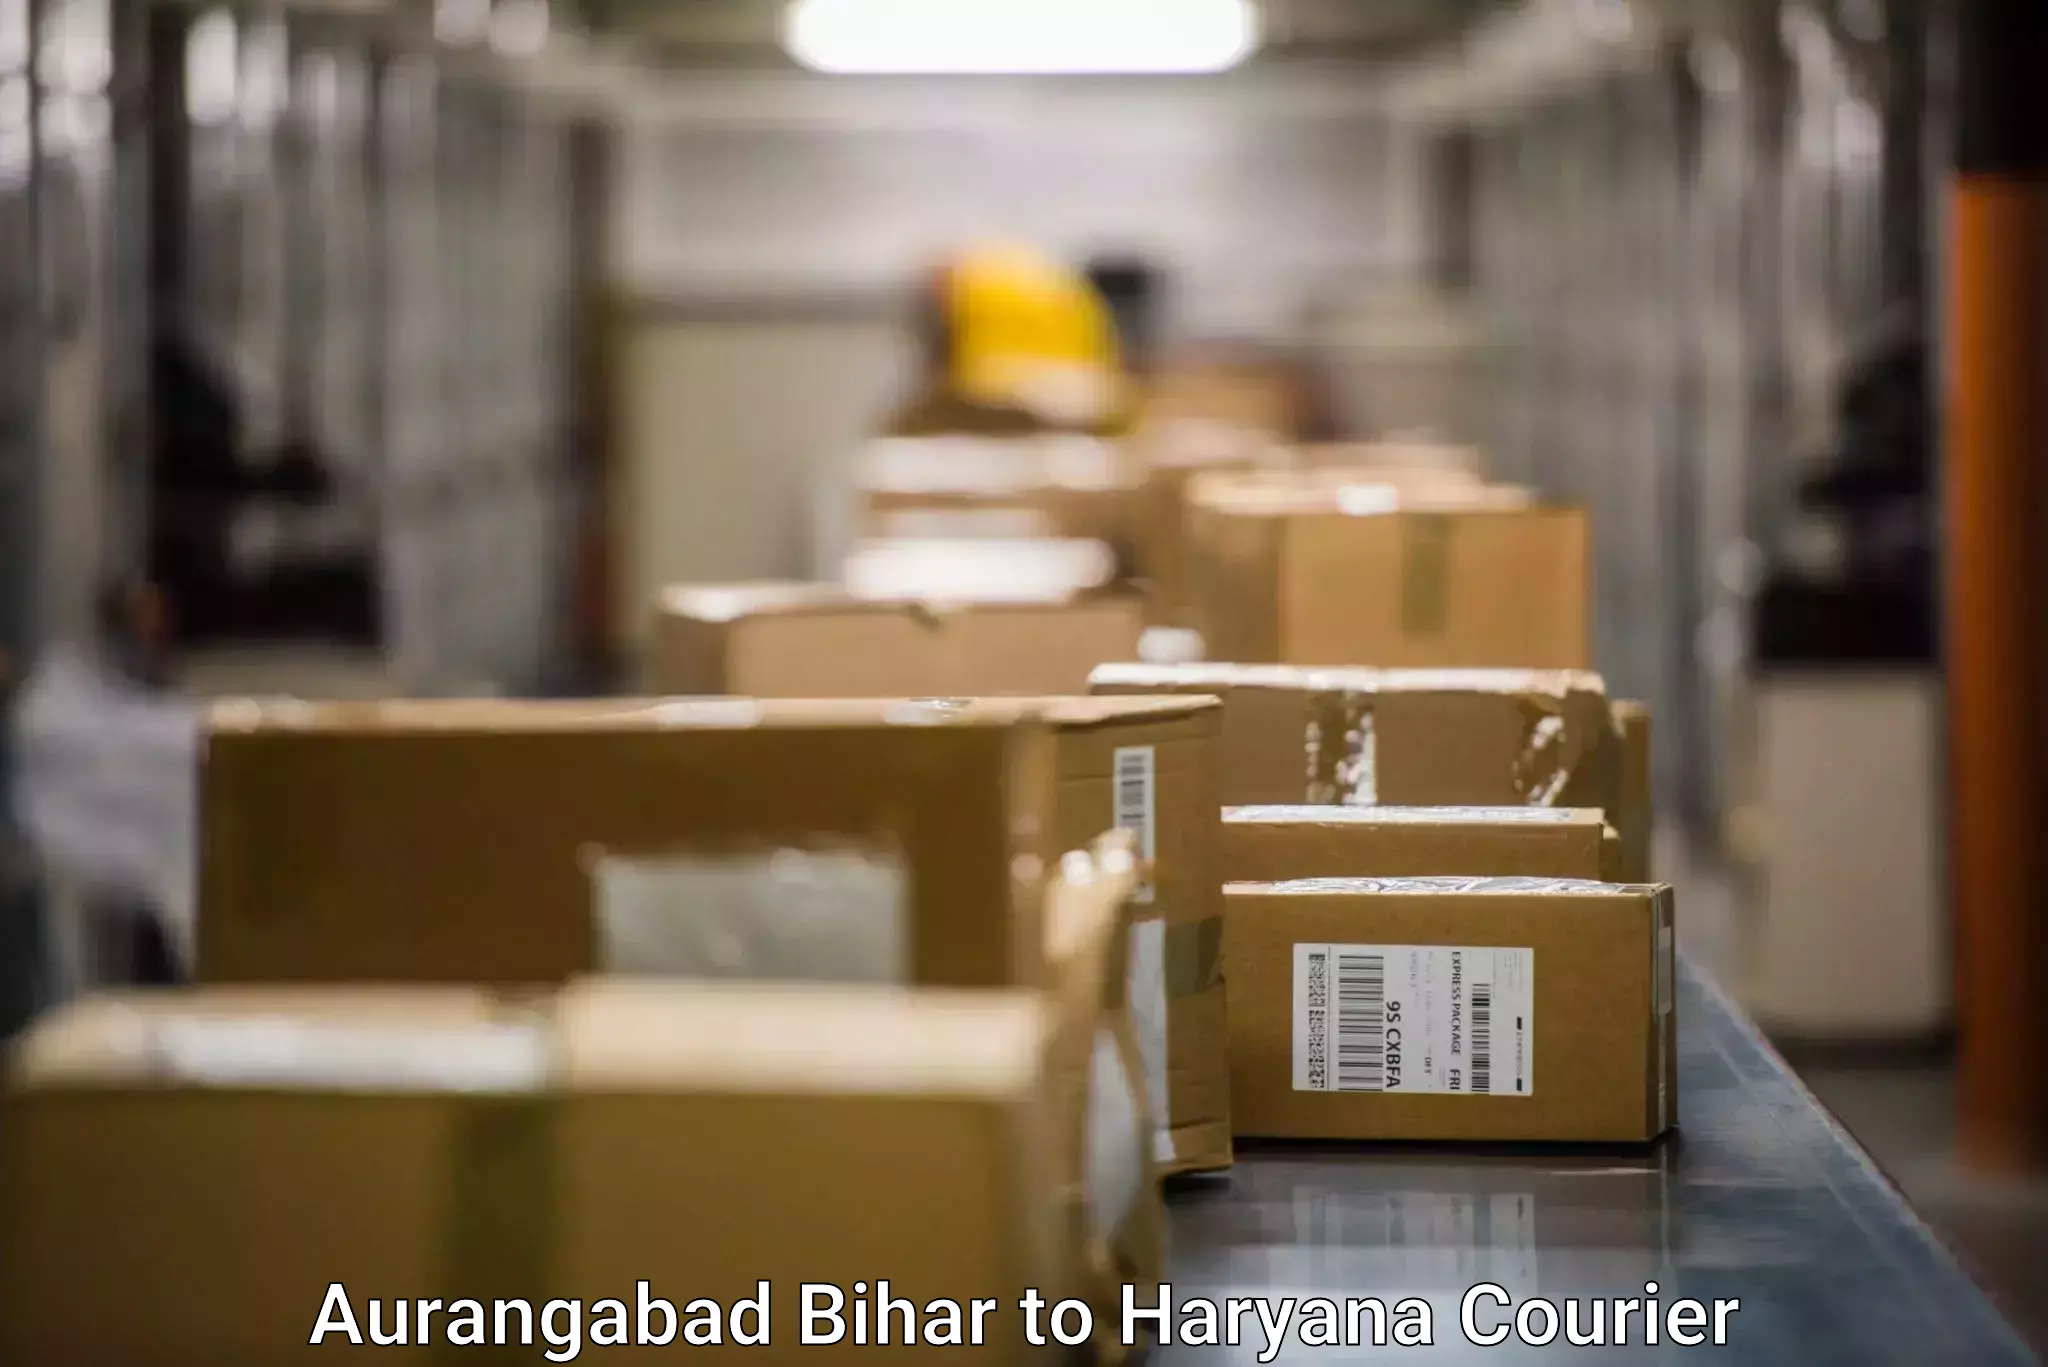 Local courier options in Aurangabad Bihar to Gohana